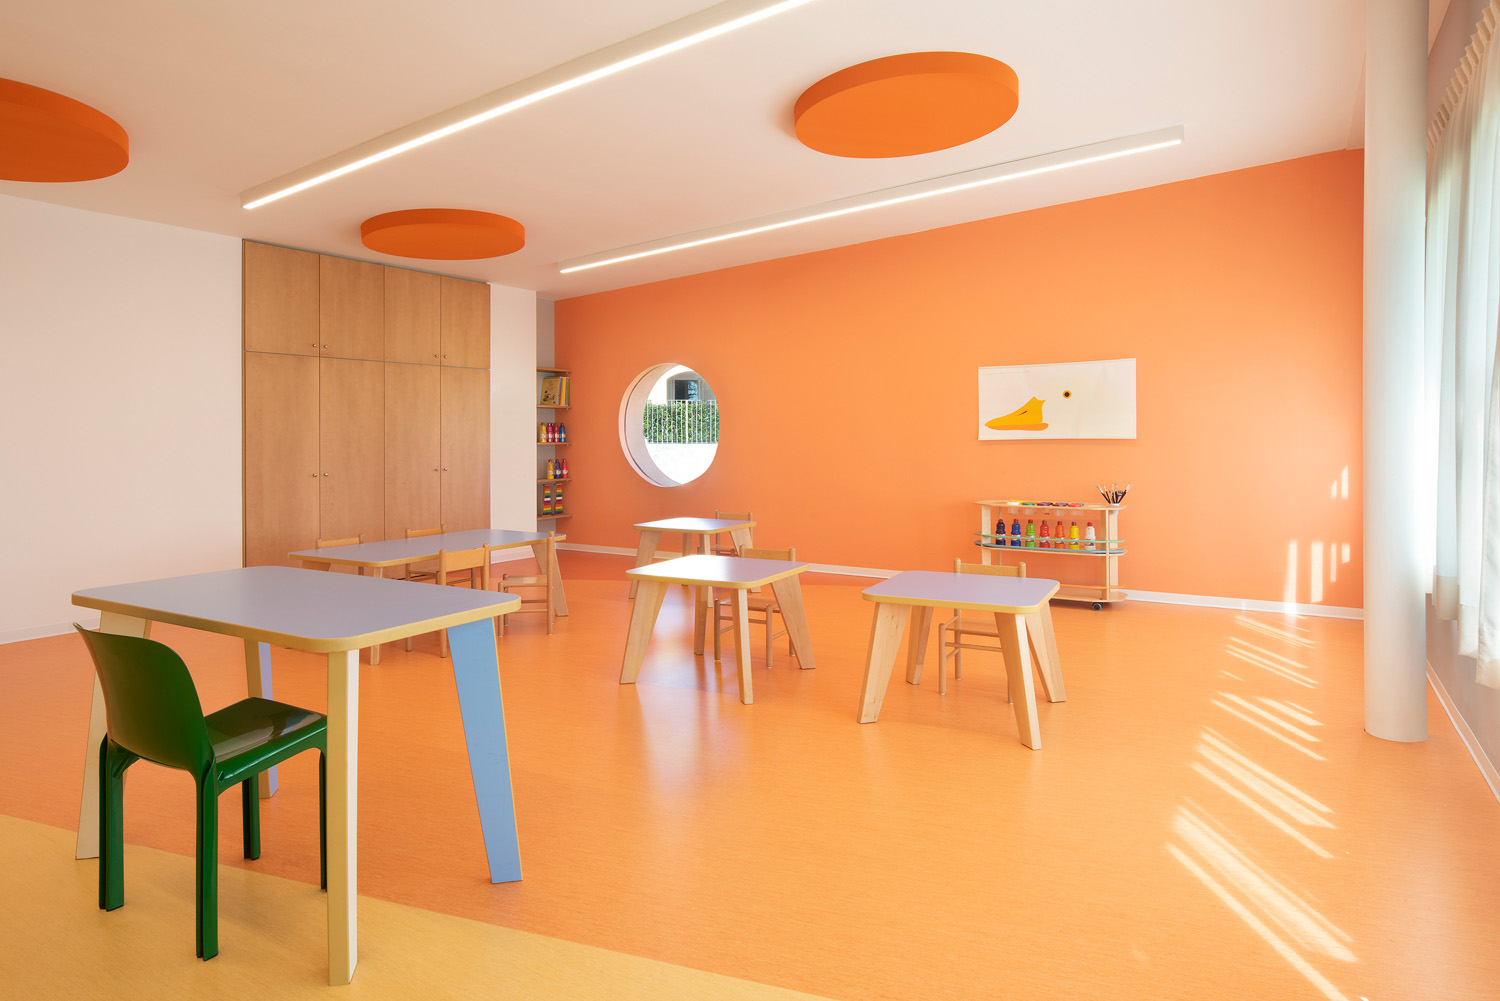 Un'aula moderna e luminosa con pareti e pavimento arancioni. Nell'aula sono presenti alcune sedie e tavoli.